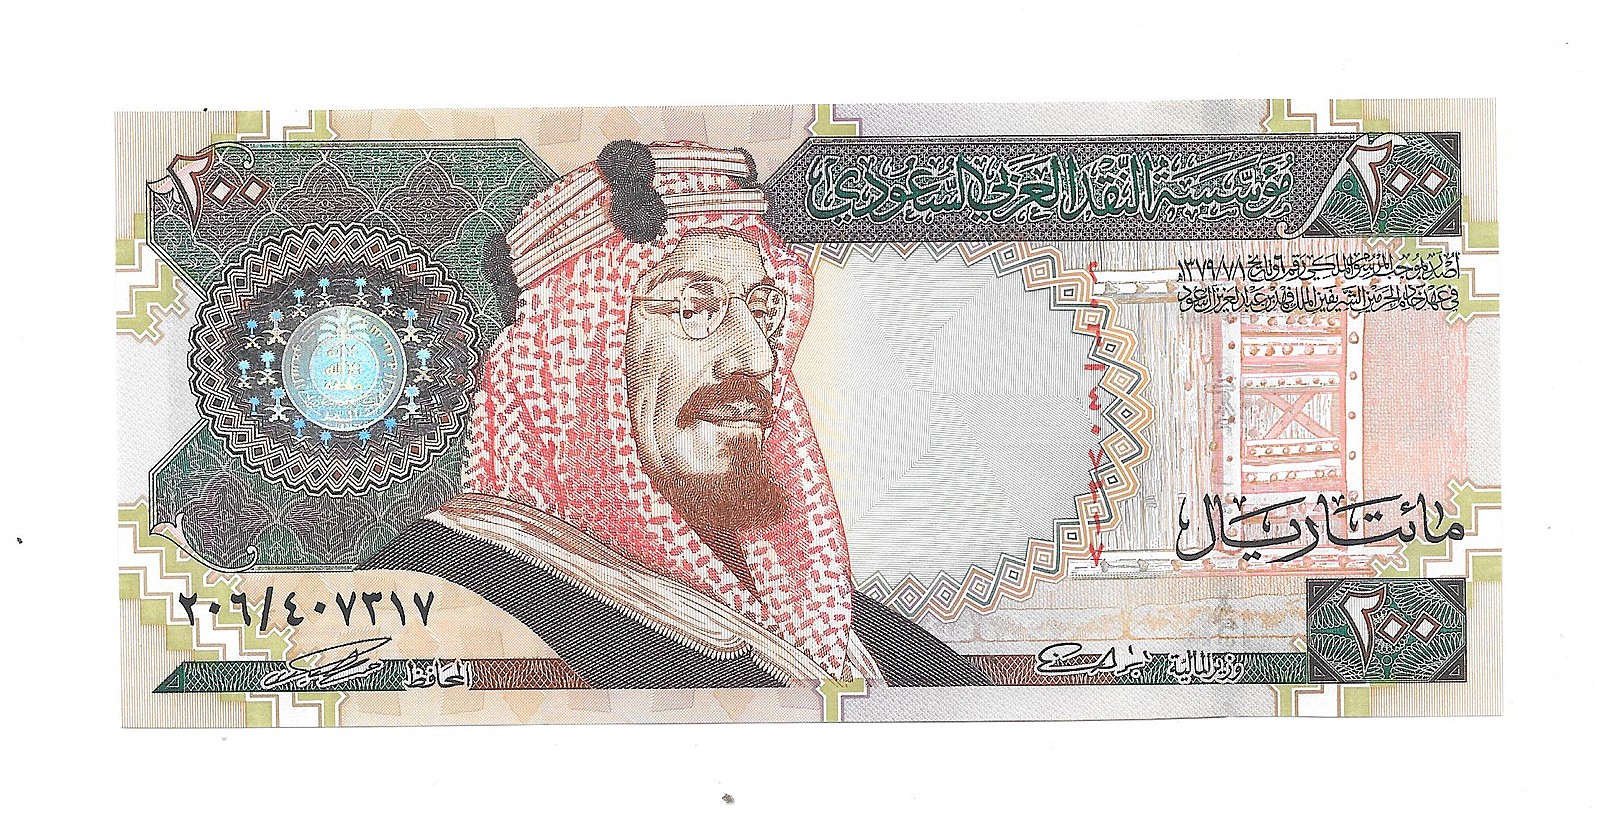 Реал саудовской аравии к рублю